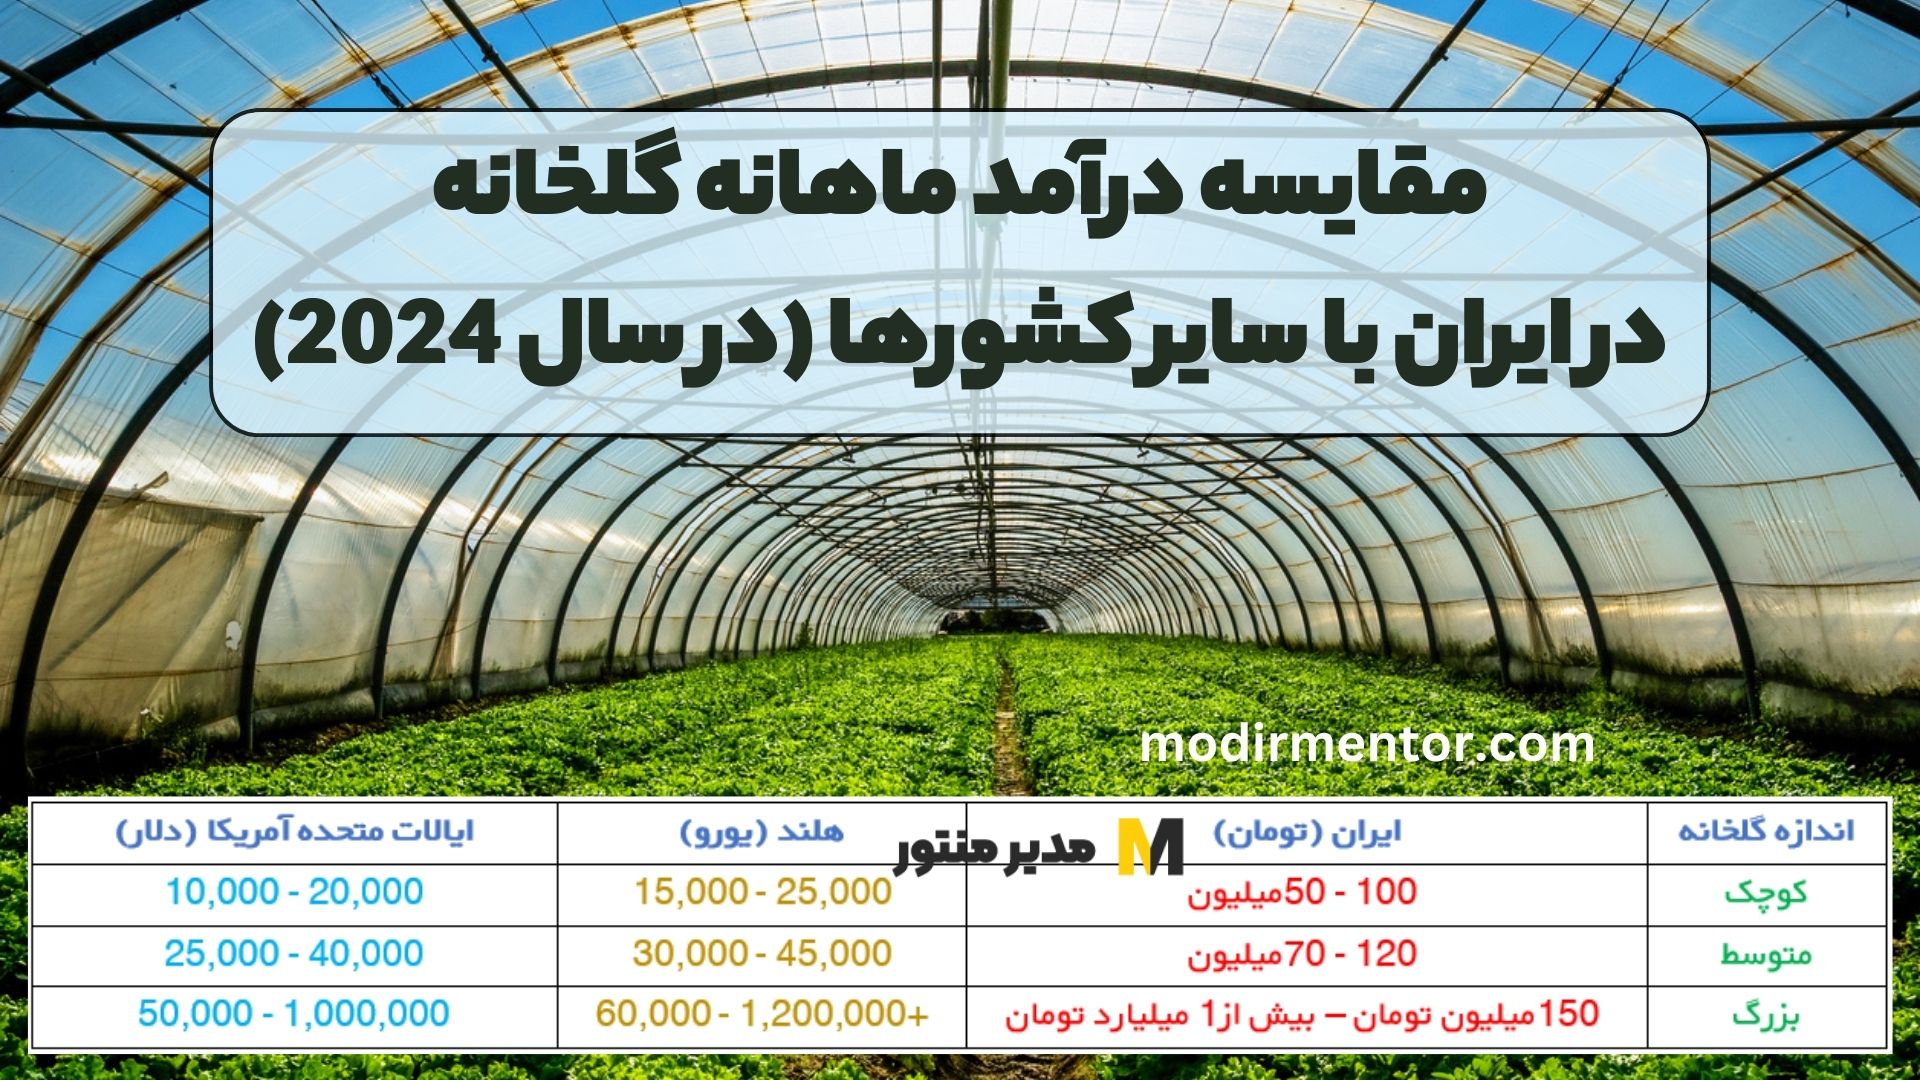 مقایسه درآمد ماهانه گلخانه در ایران با سایر کشورها (در سال 2024)